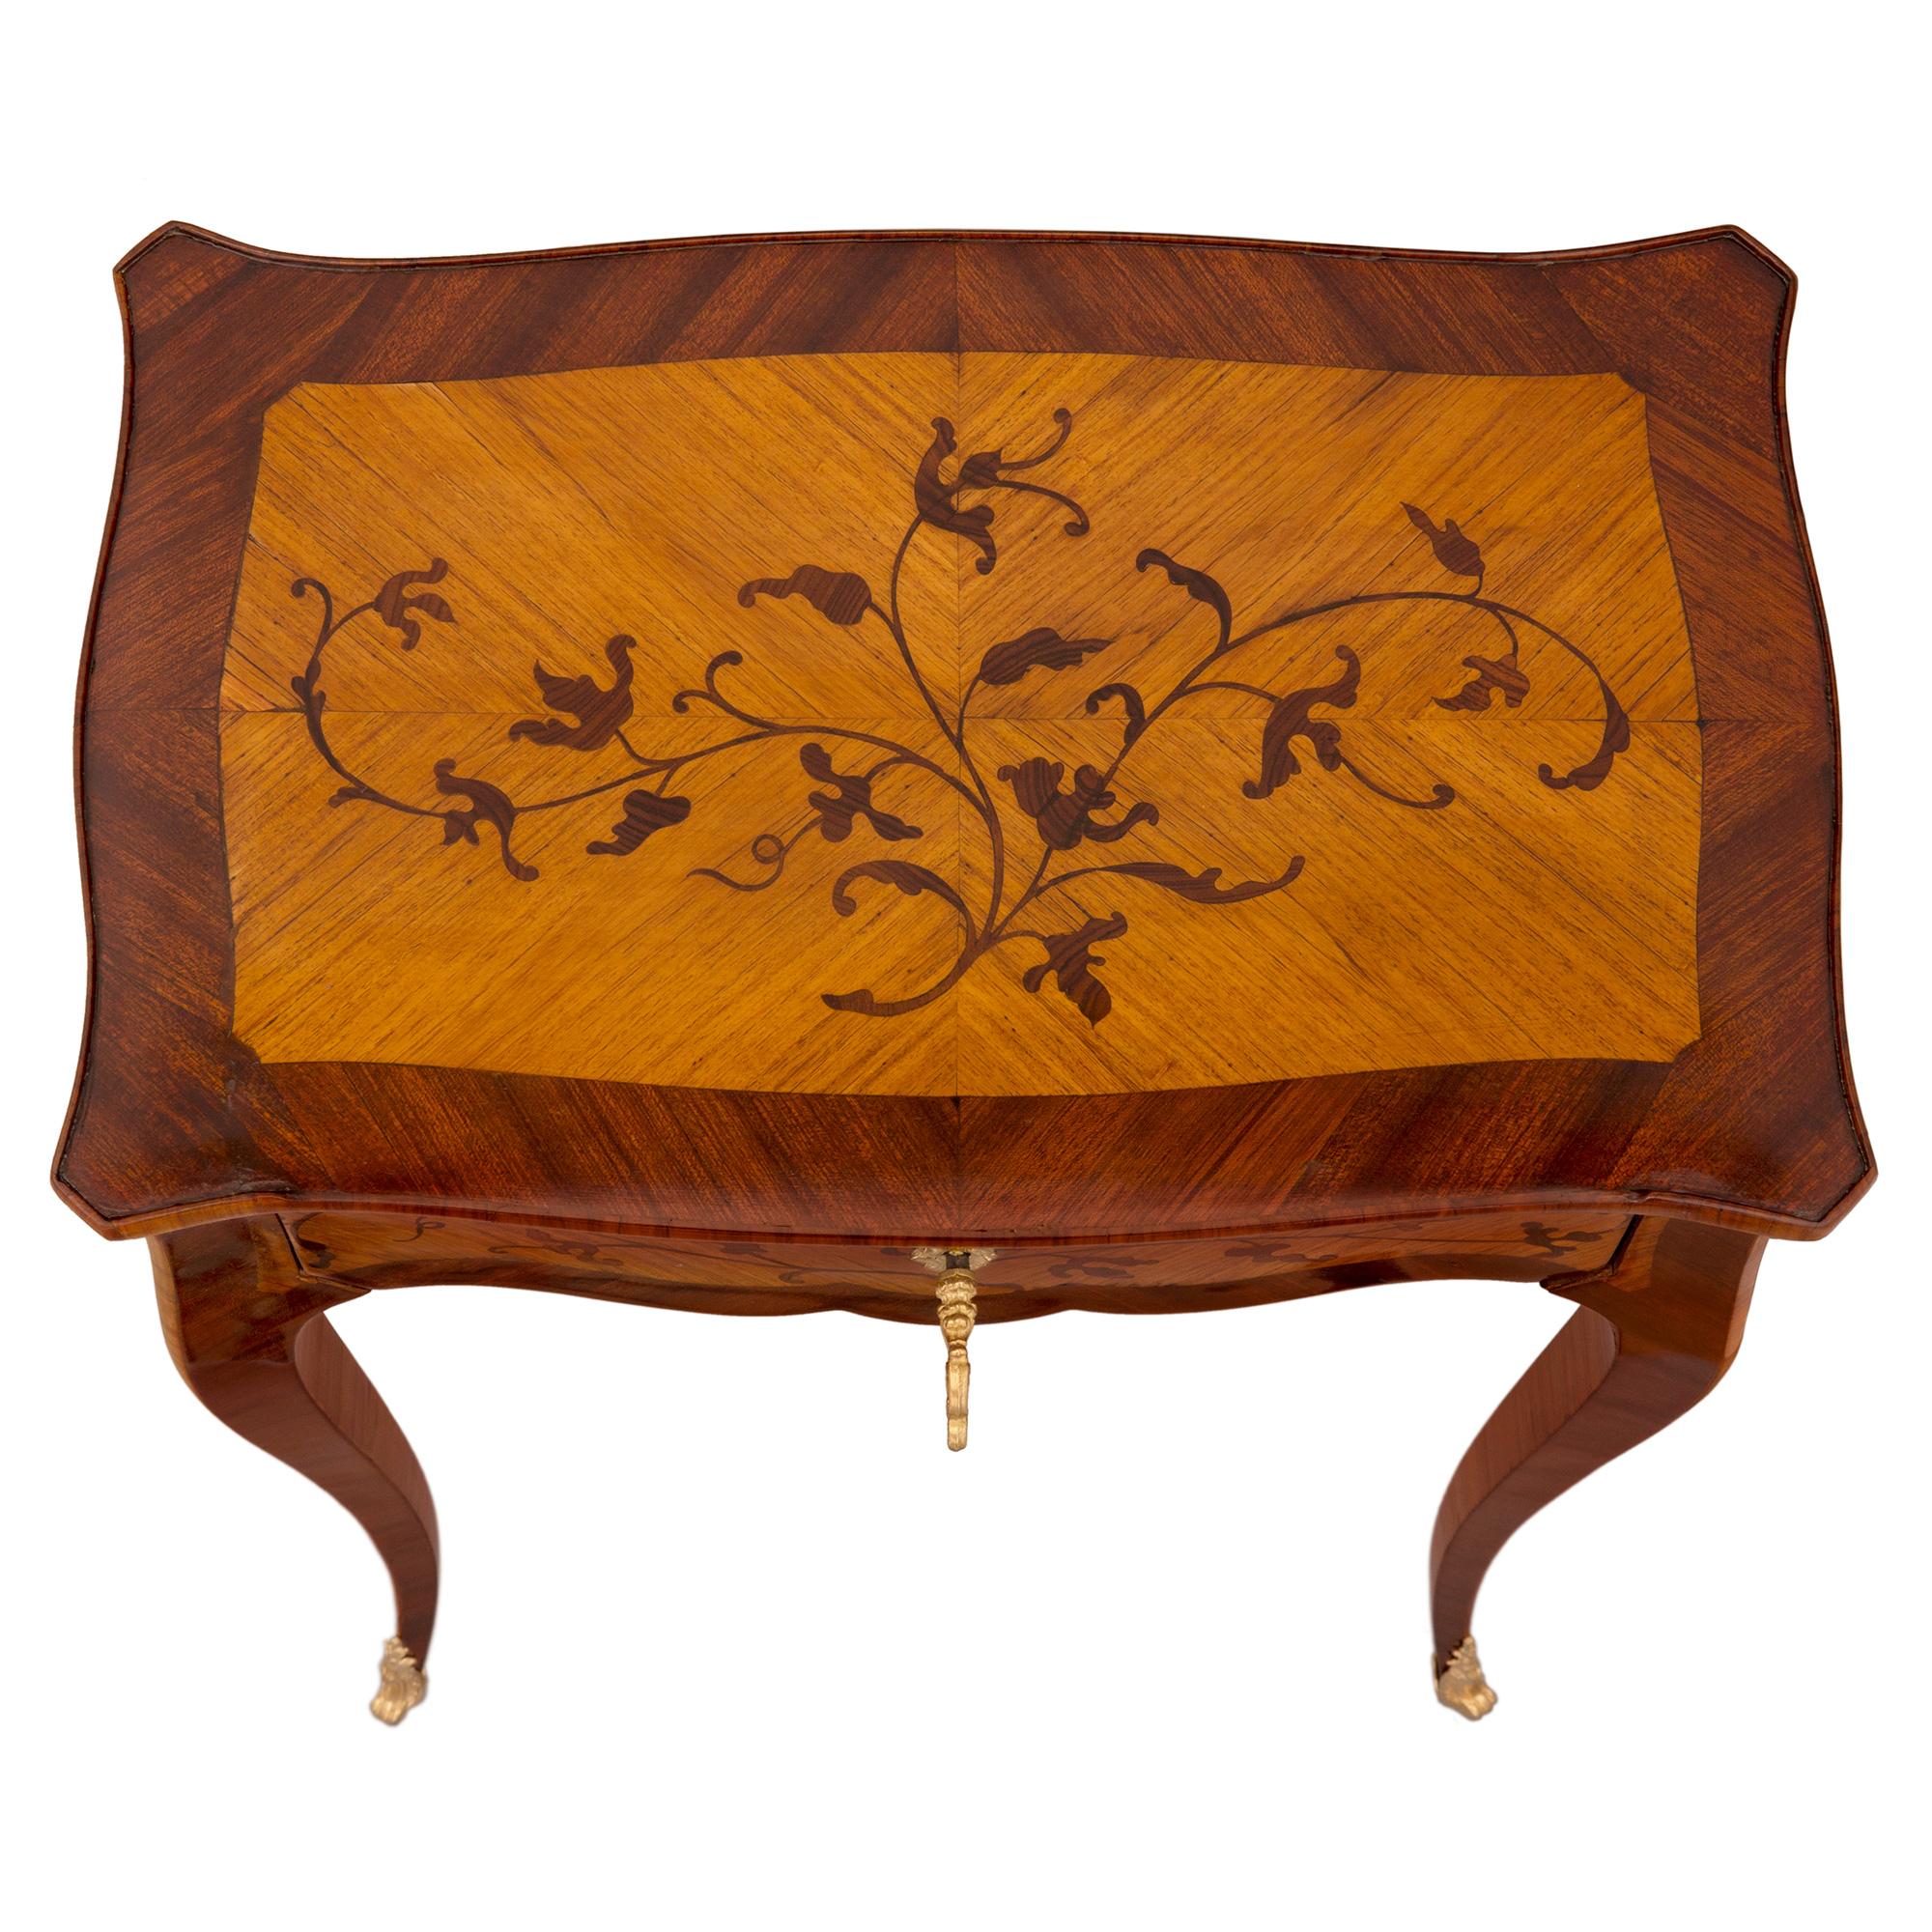 Charmante table d'appoint française du XIXe siècle, de style Louis XV, en bois de roi, tulipier et bronze doré. La table est surélevée par d'élégants pieds cabriole effilés et minces avec des sabots en bronze doré finement ajustés. La frise de forme